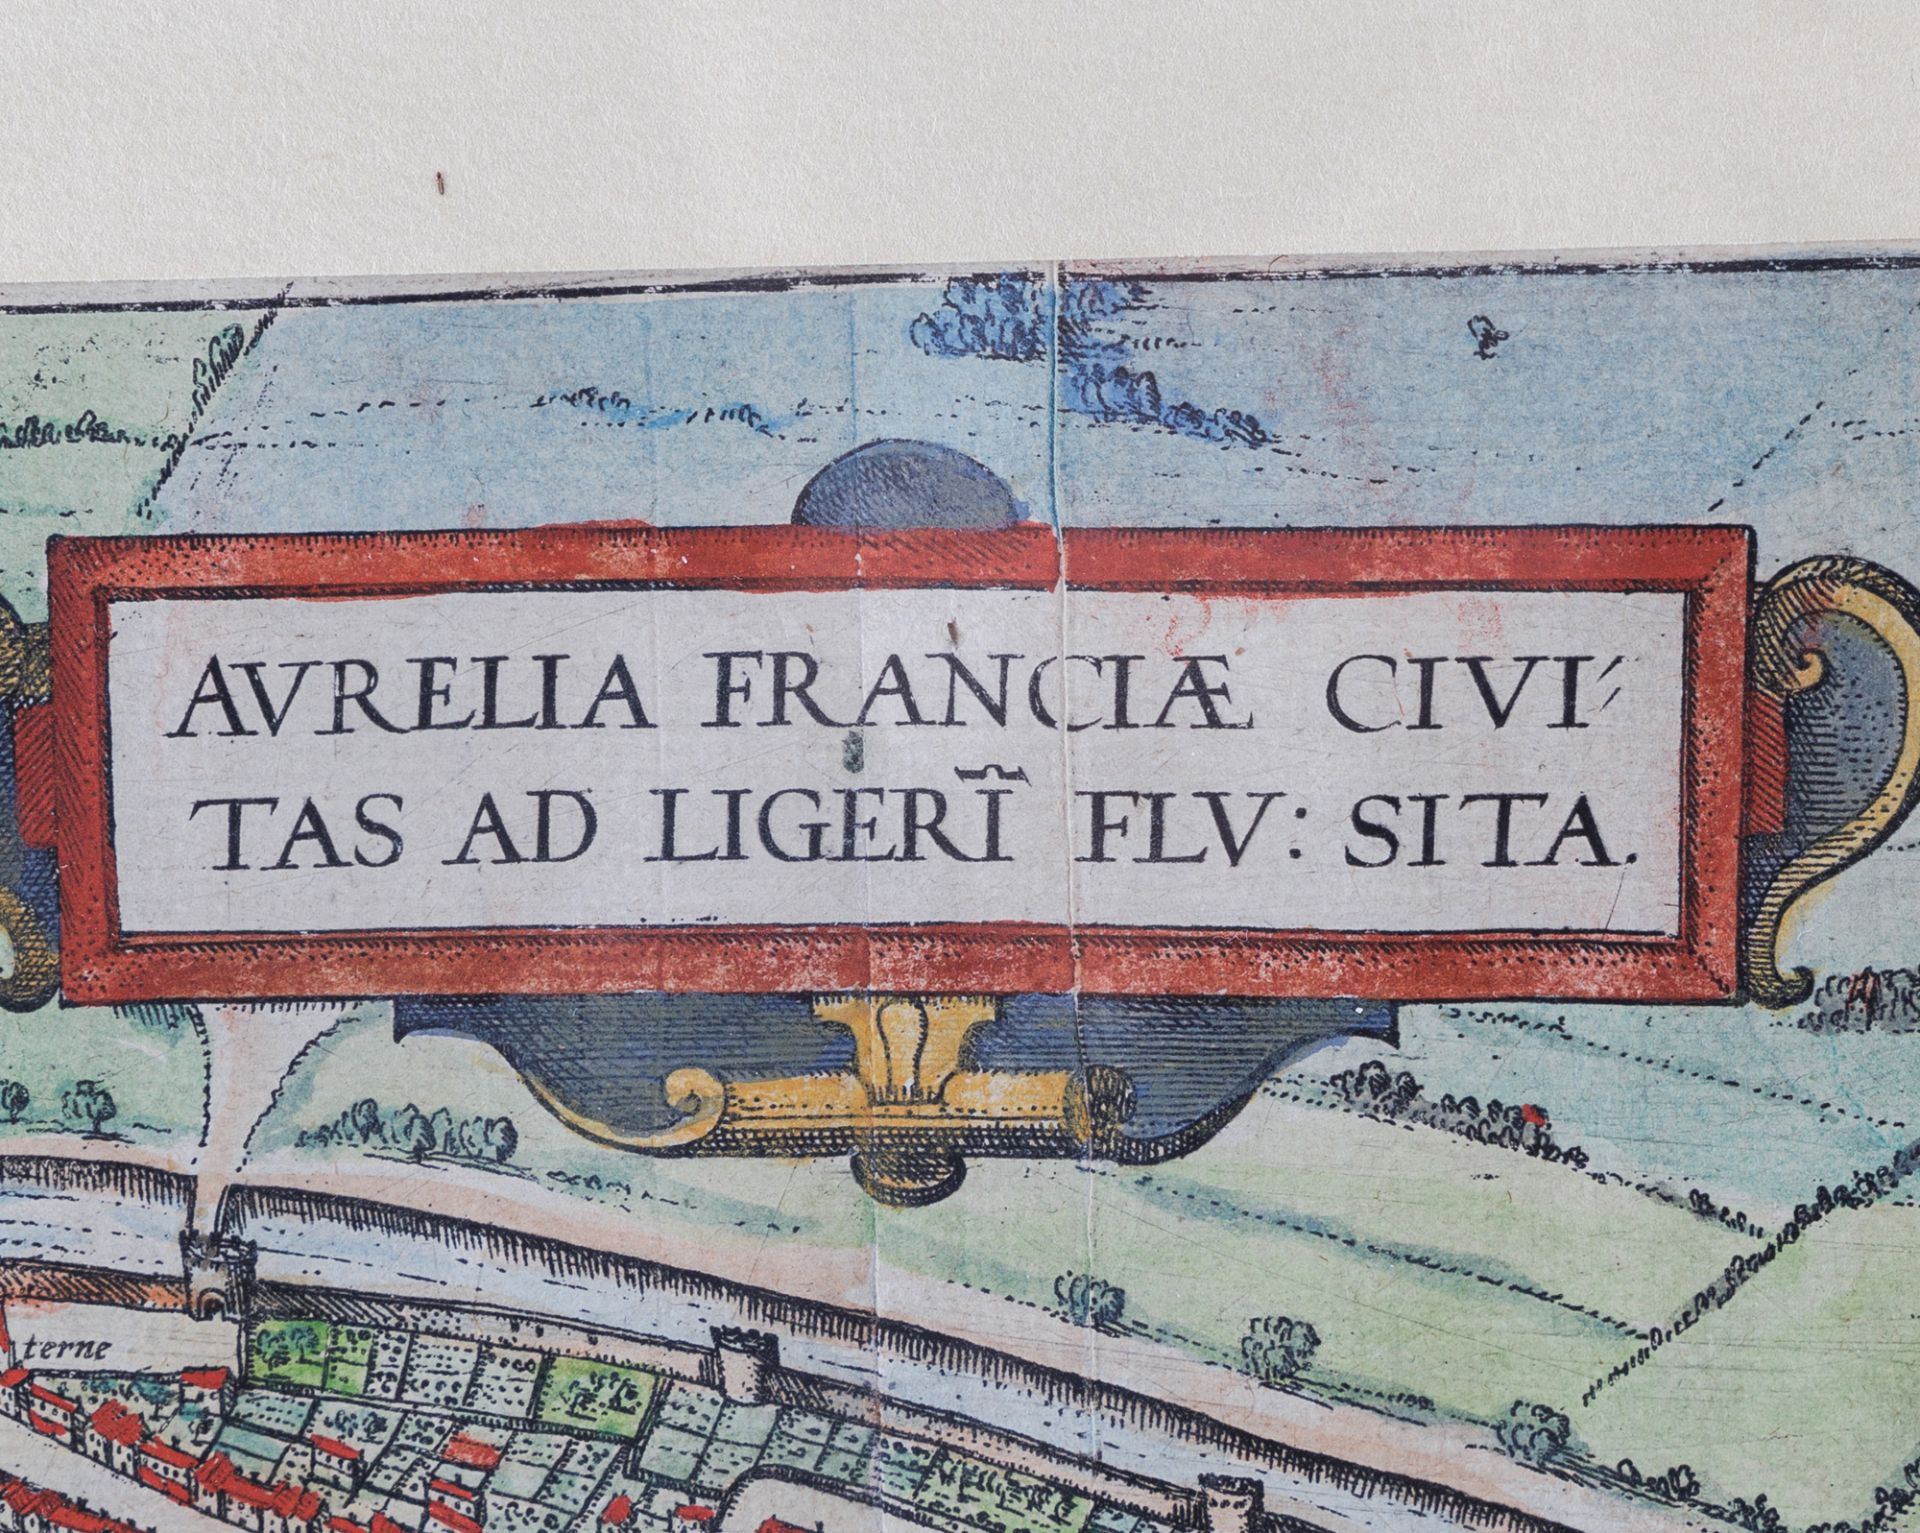 Altkolorierte Kupferstichkarte von Orléans (Aurelia Franciae) - Bild 2 aus 2